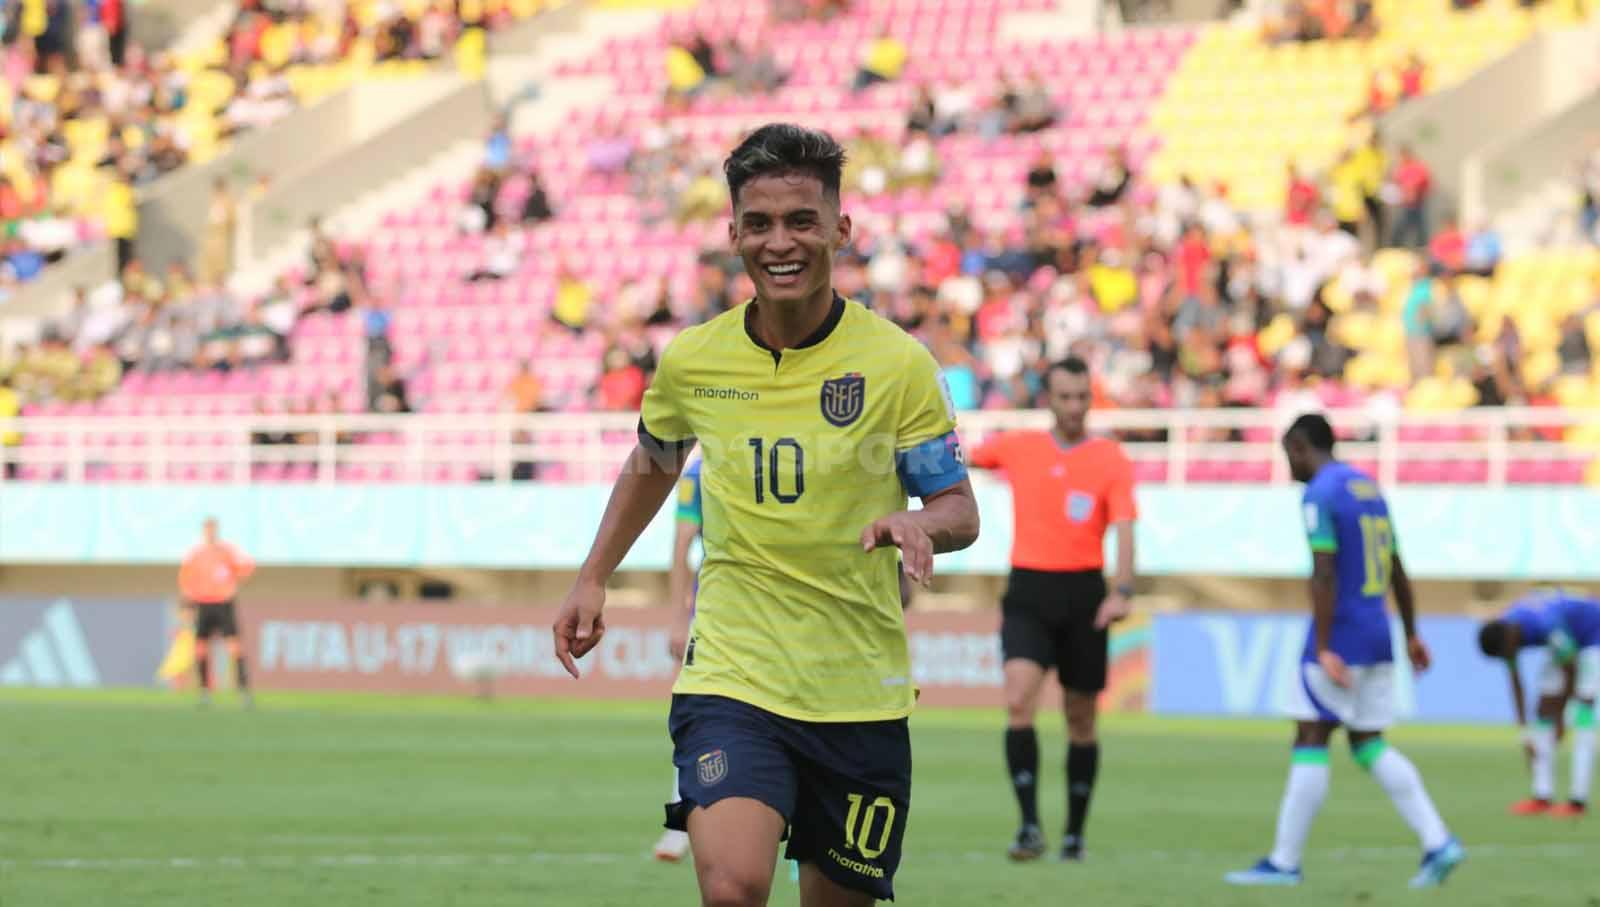 Selebrasi penyerang Ekuador, Michael Bermudez, setelah mencetak gol ke gawang Brasil dalam pertandingan babak 16 besar Piala Dunia U-17 2023 di Stadion Manahan Solo, Senin (20/11/23). (Foto: Nofik Lukman Hakim/INDOSPORT)